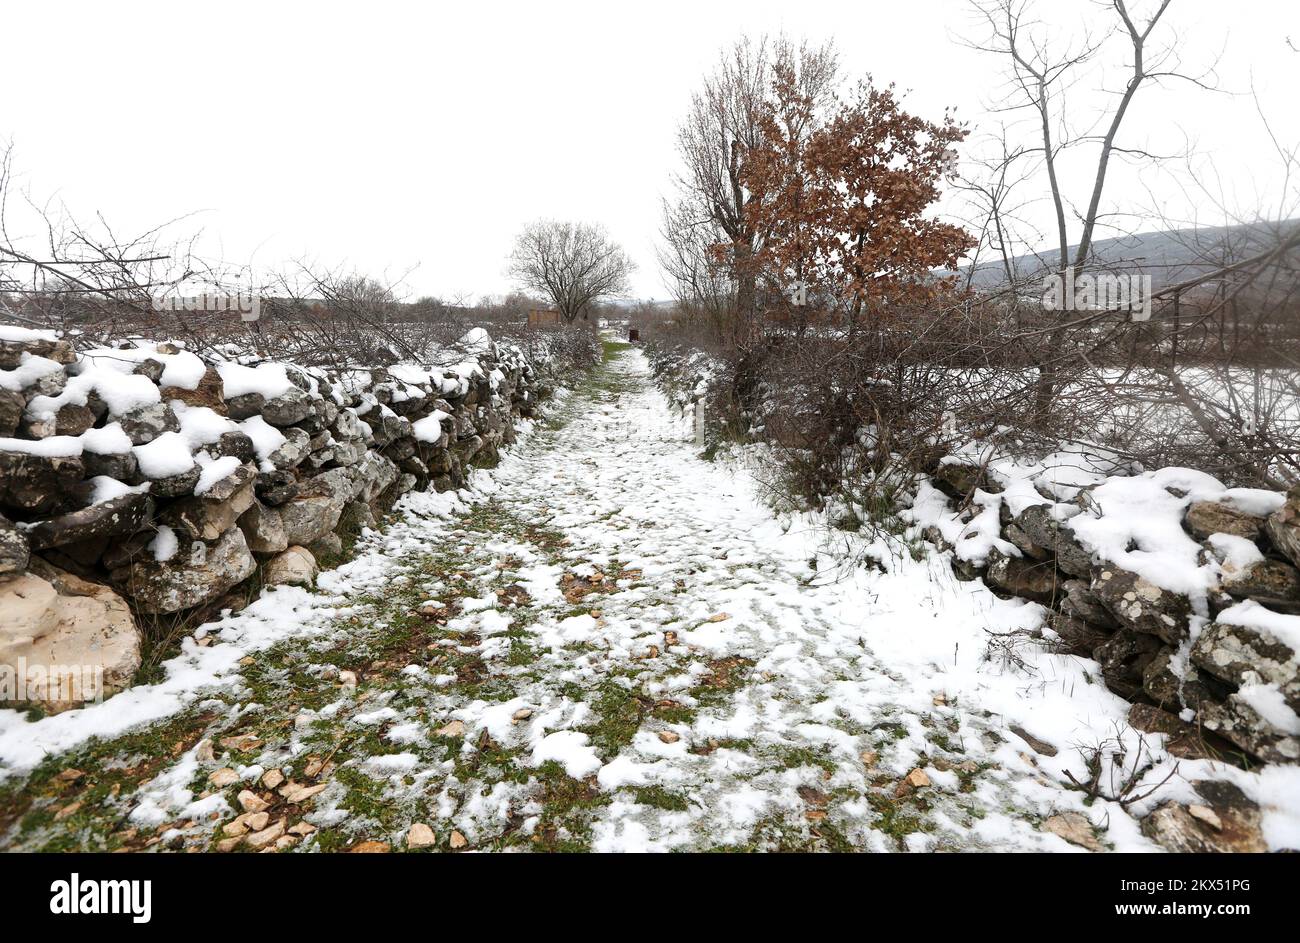 25.02.2018., Croazia, Unesic - atmosfera invernale a Zagora. Unesic e le capanne circostanti sono coperte di neve. Foto: Dusko Jaramaz/PIXSELL Foto Stock